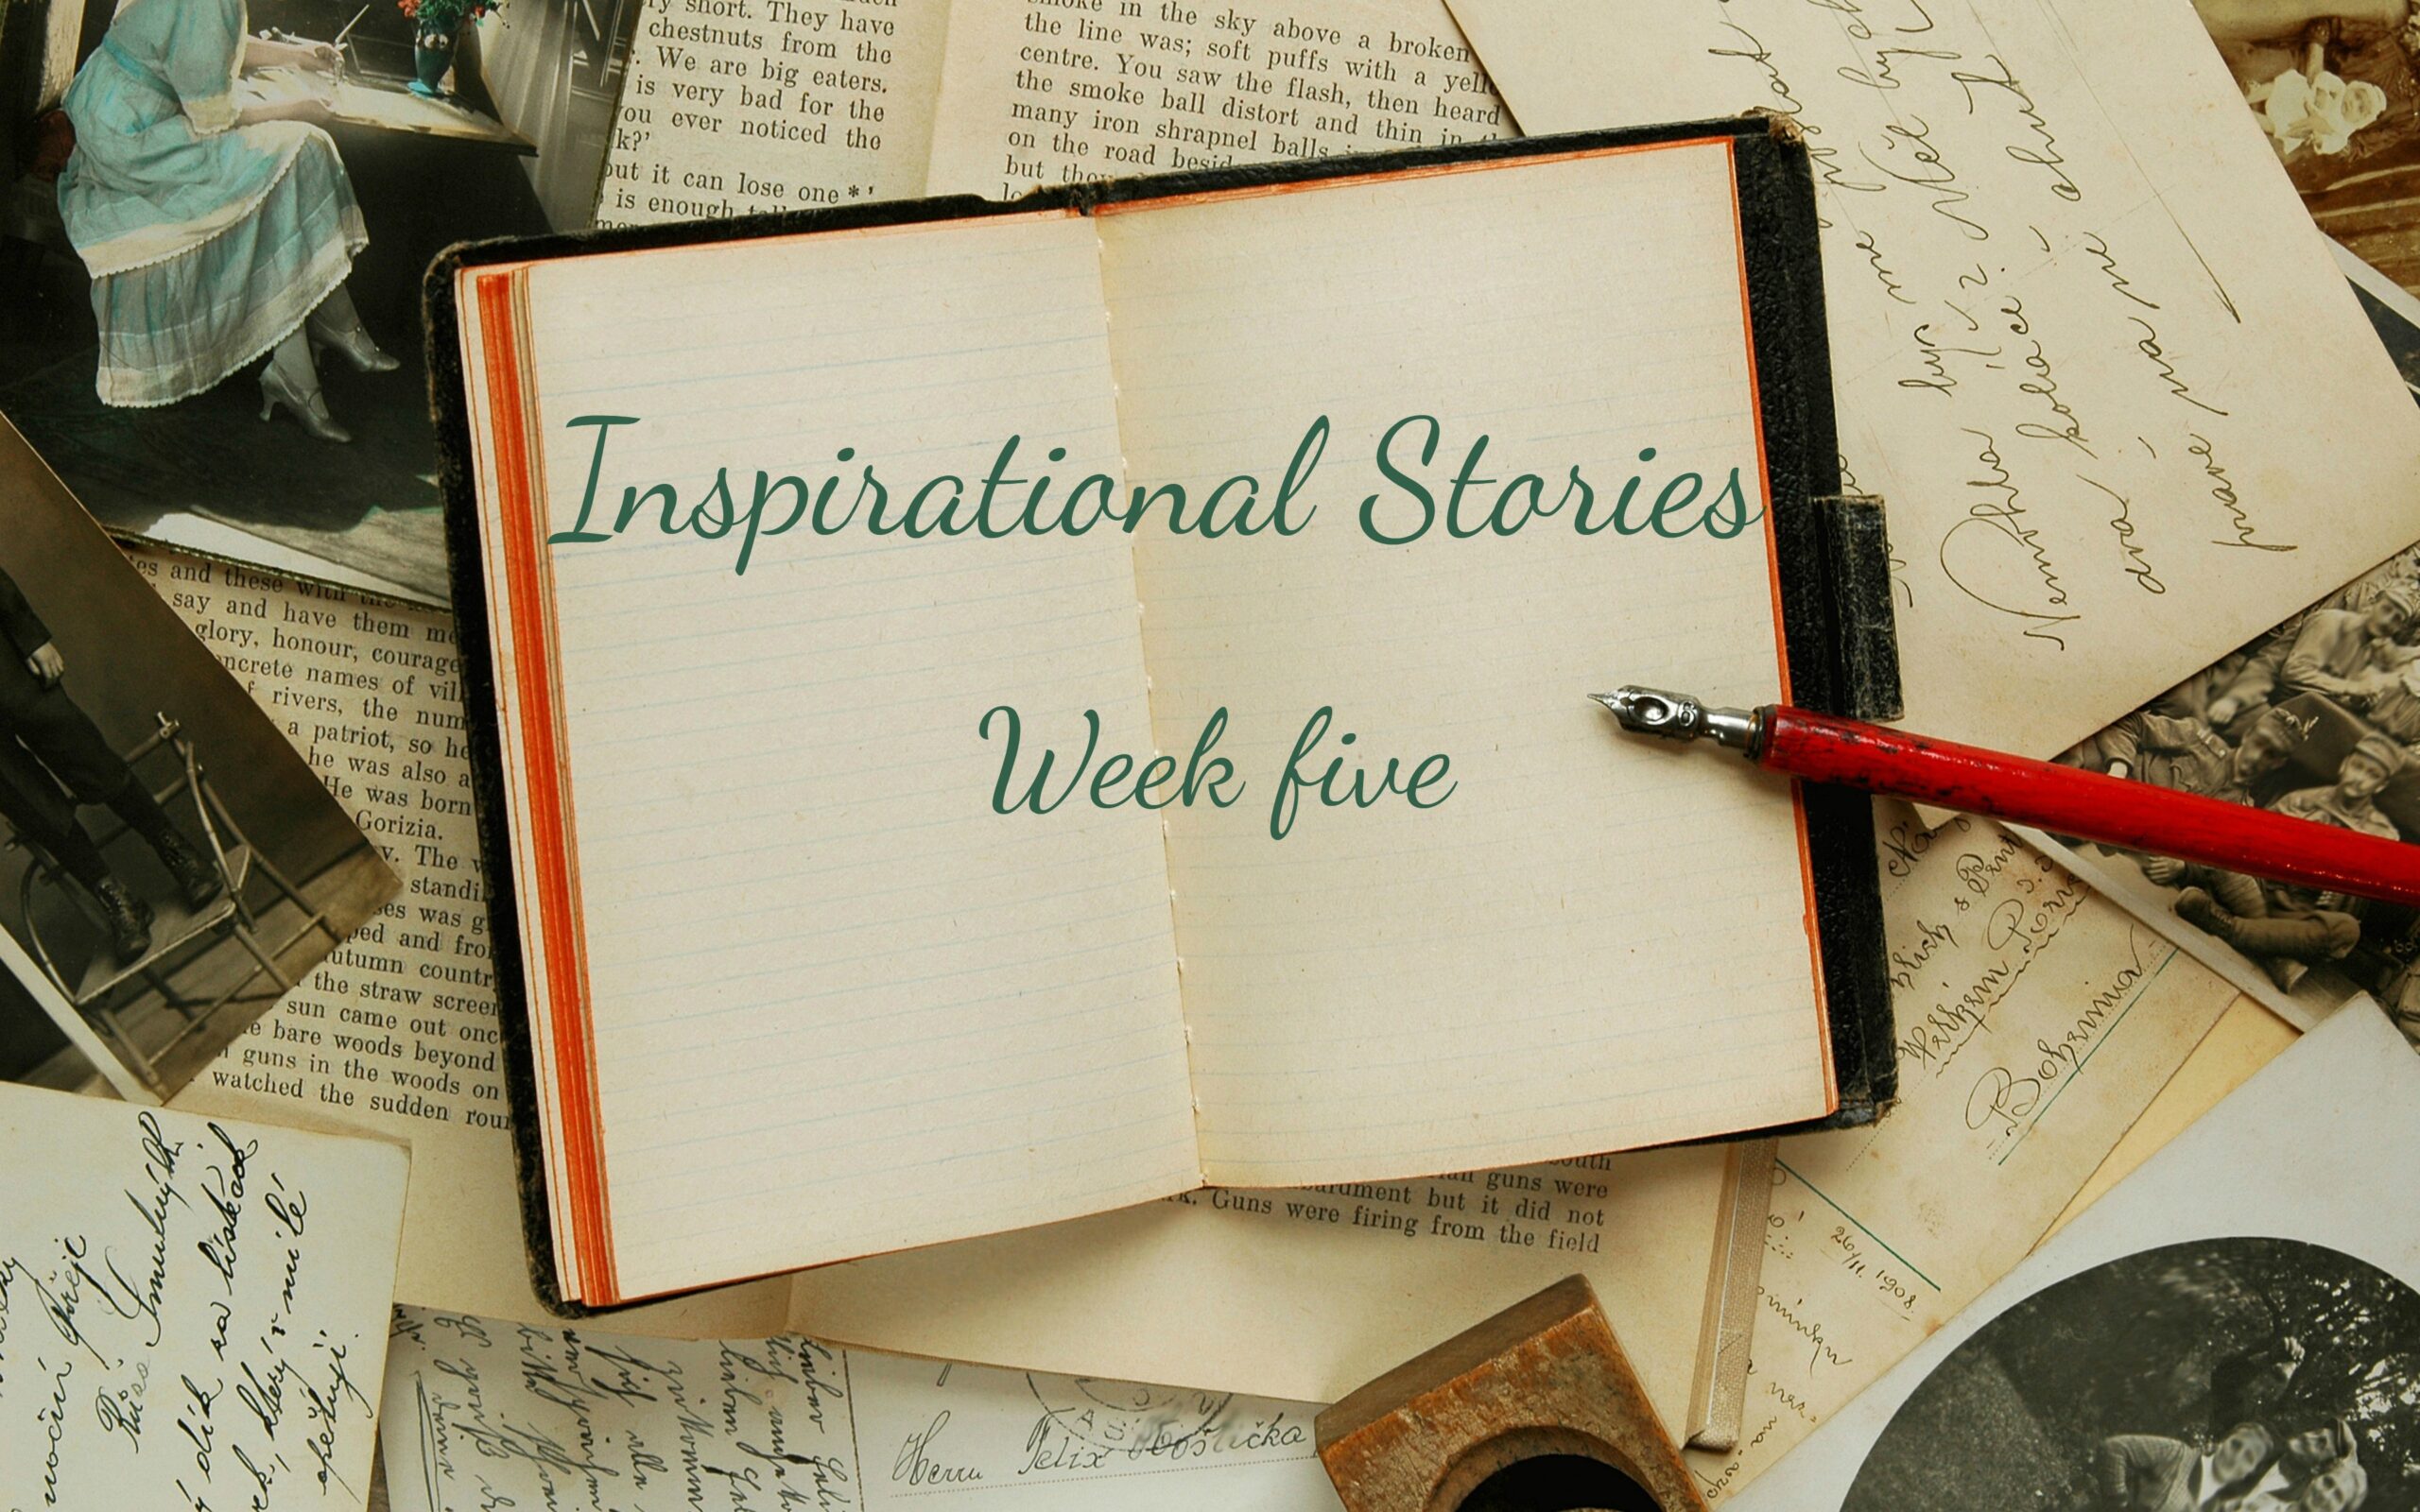 inspirational stories week five written across a book